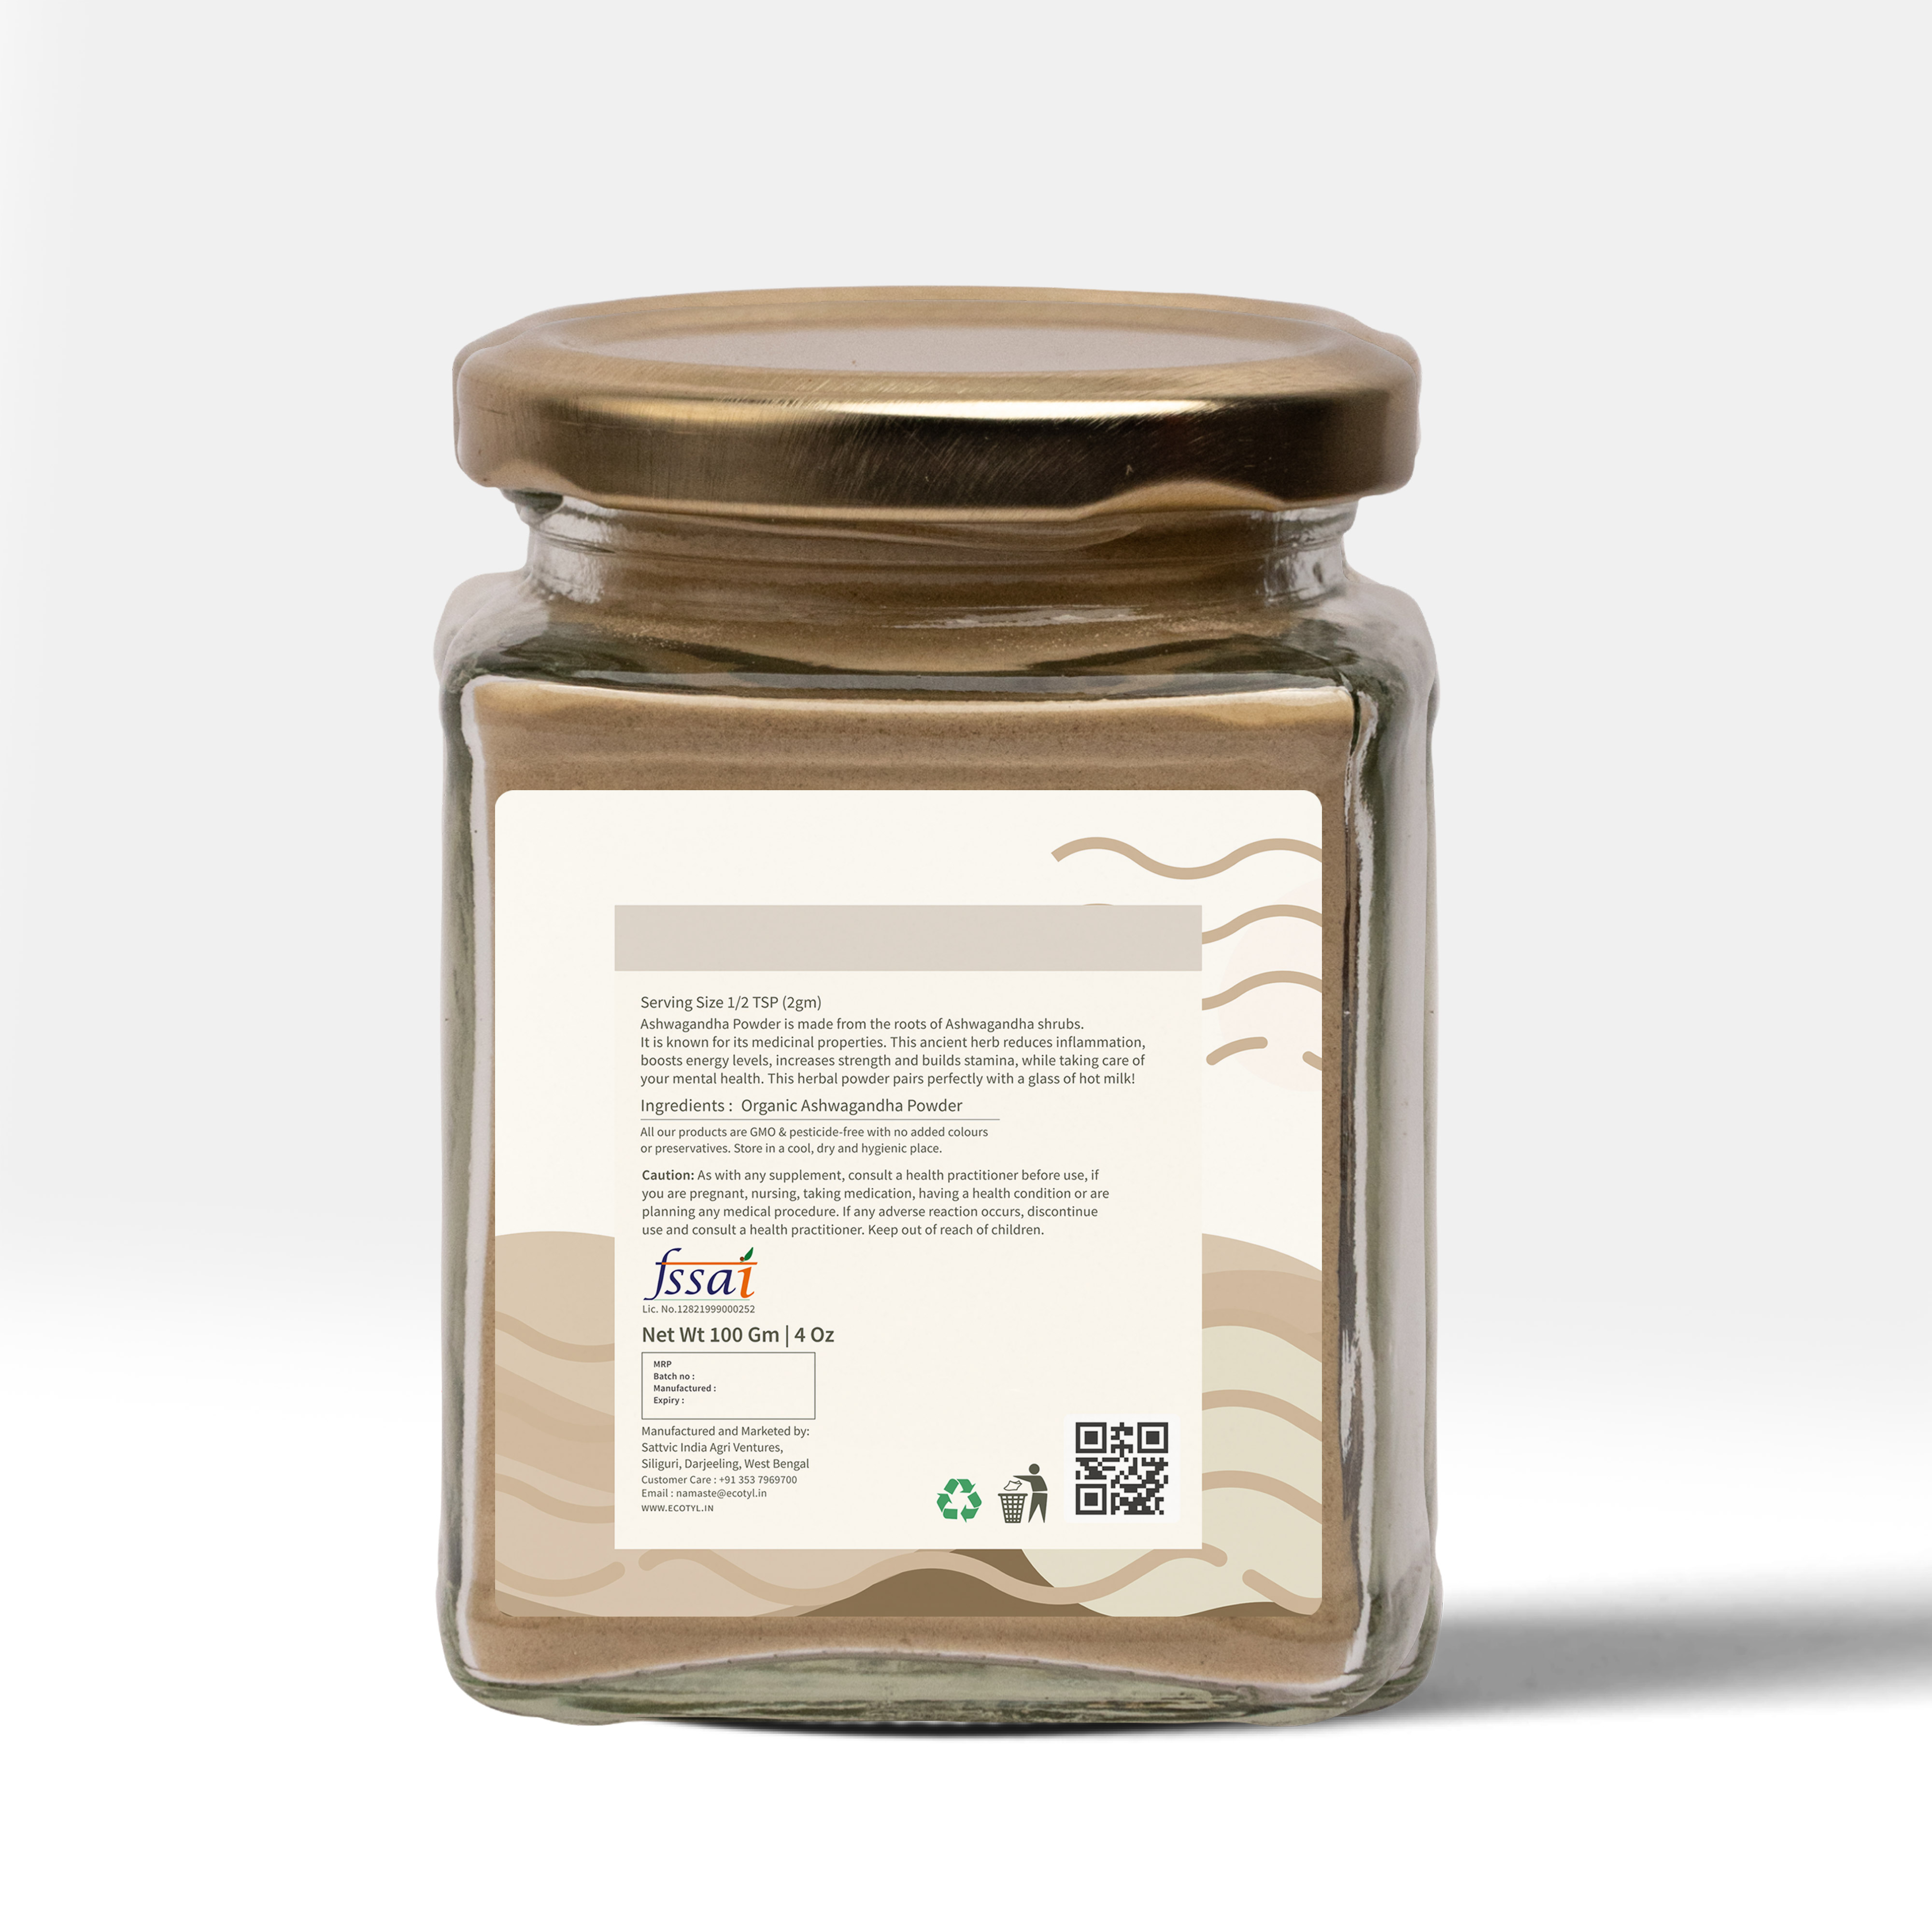 Buy Ecotyl Organic Ashwagandha Powder - 100 g at Best Price Online